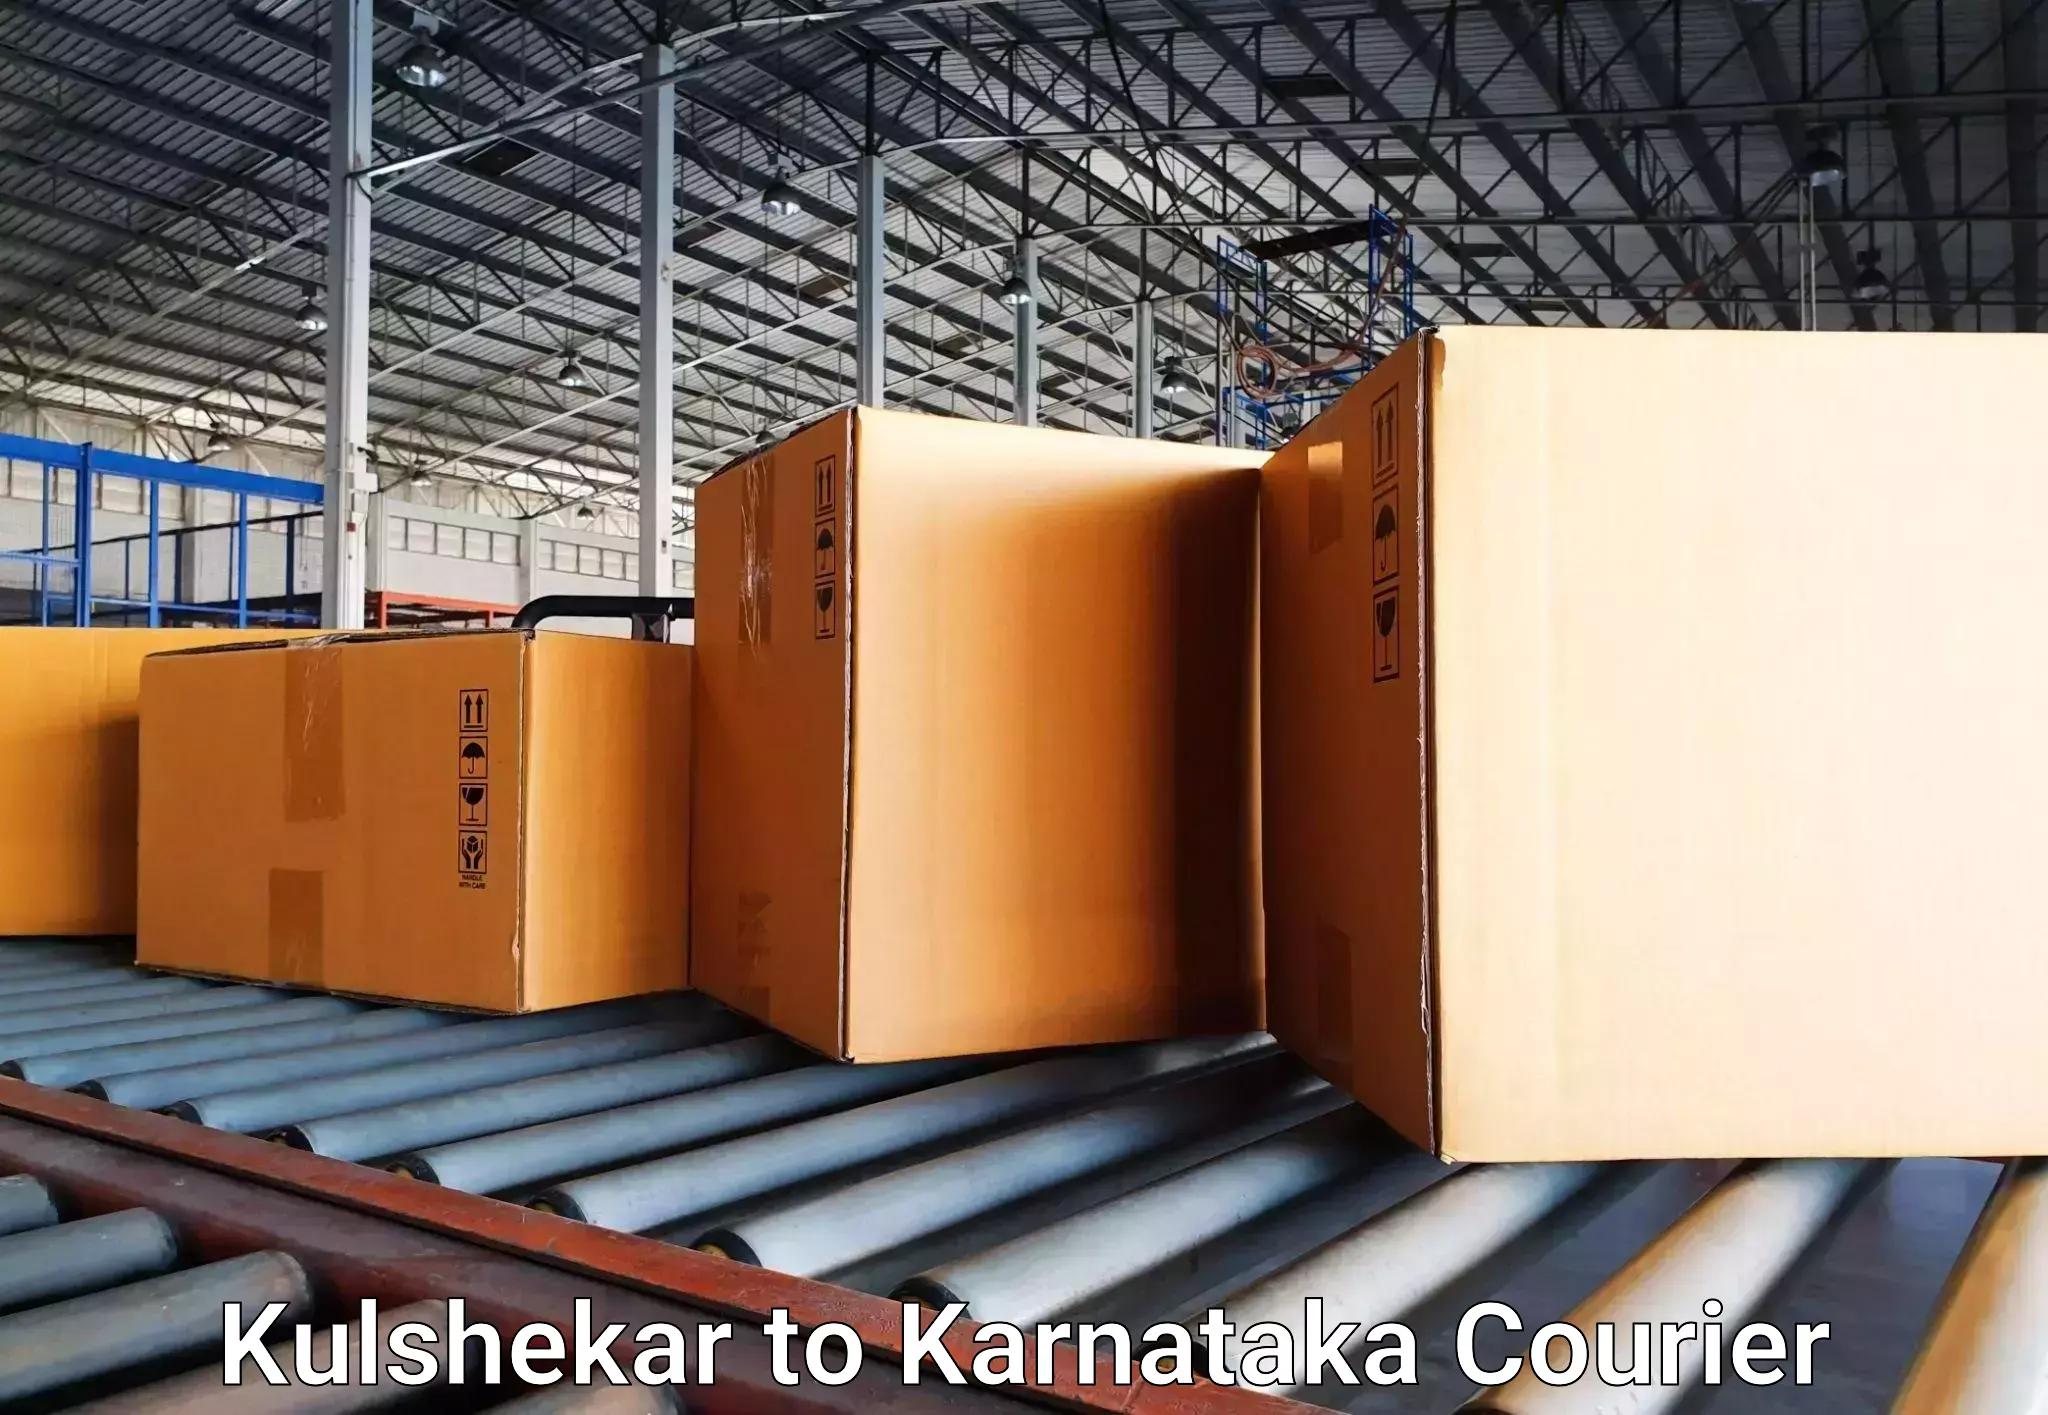 Baggage transport technology Kulshekar to Deodurga